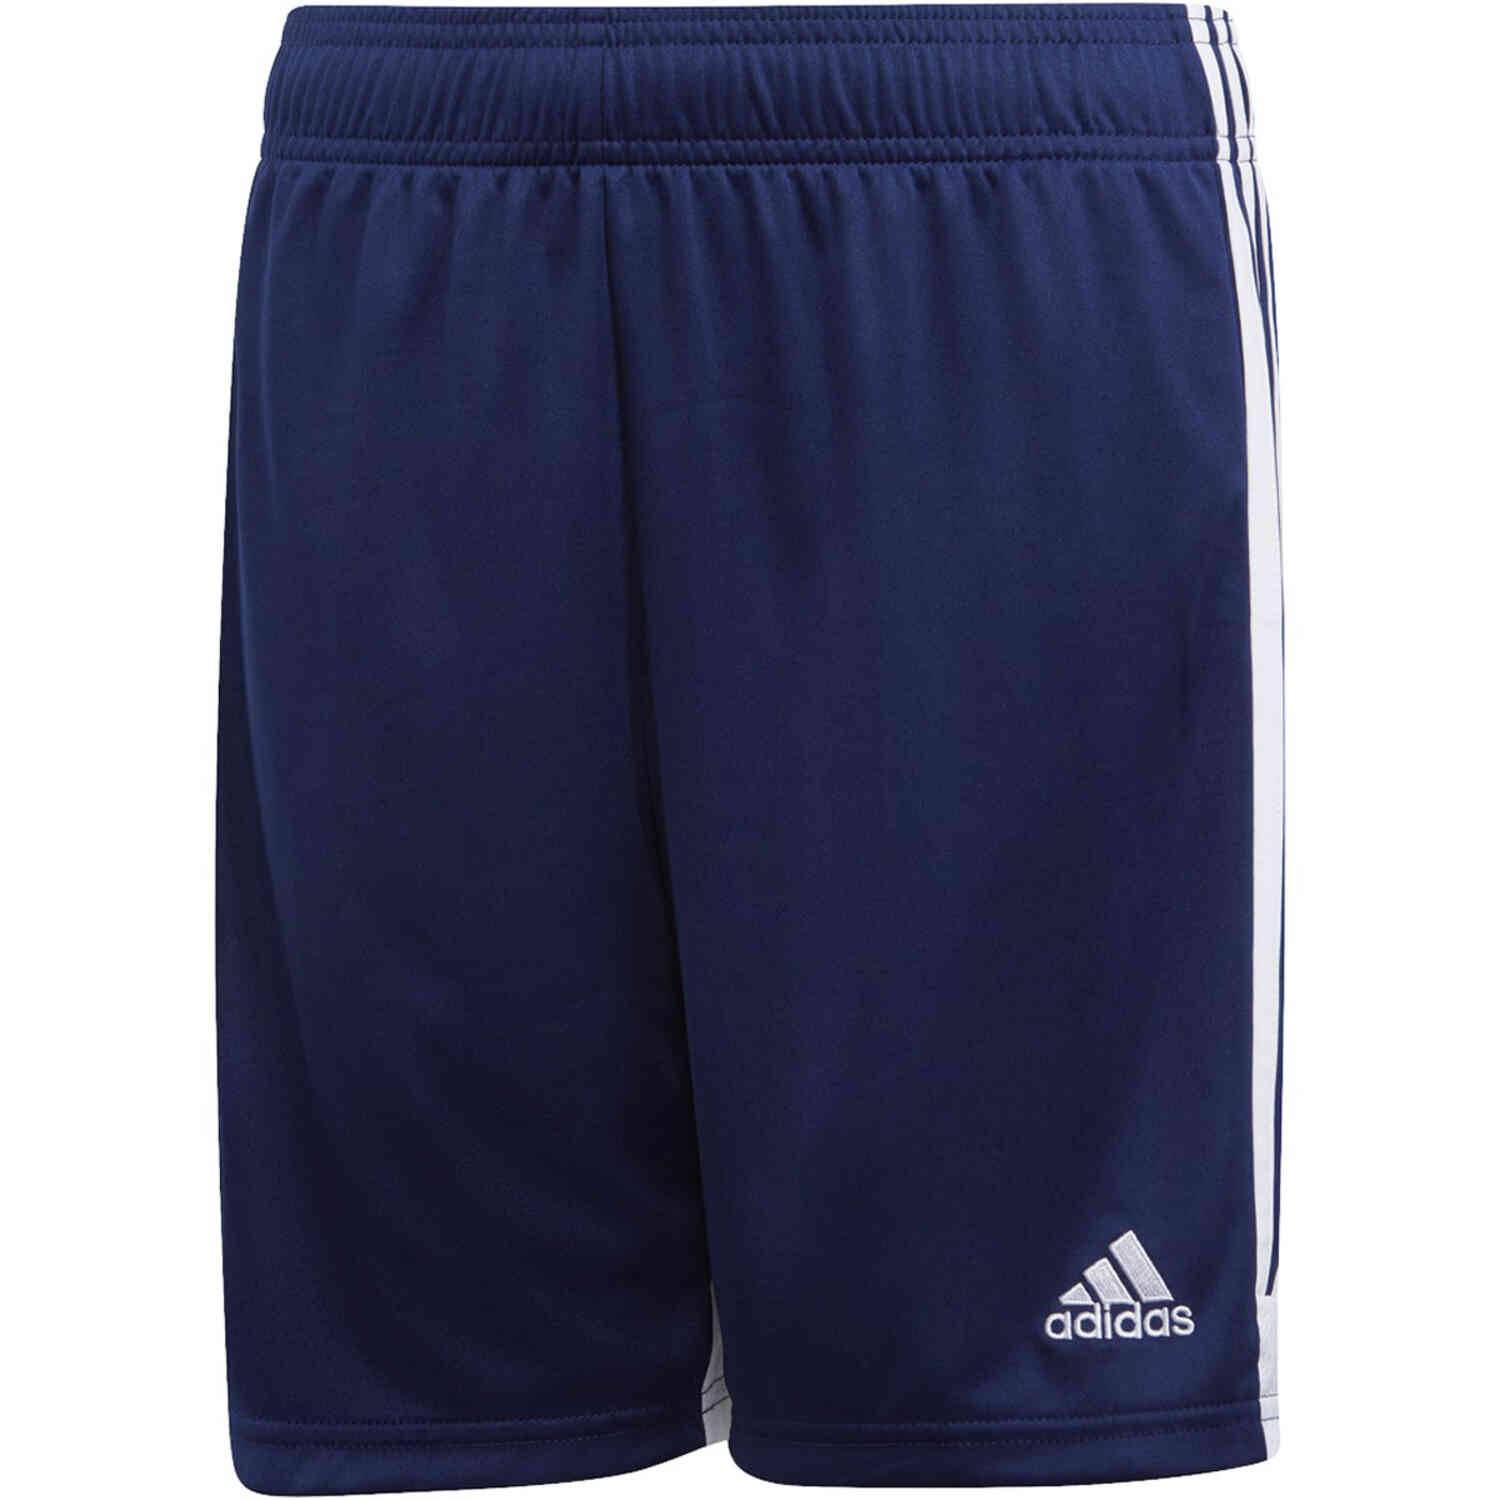 Kids adidas Tastigo 19 Shorts - Dark Blue - SoccerPro